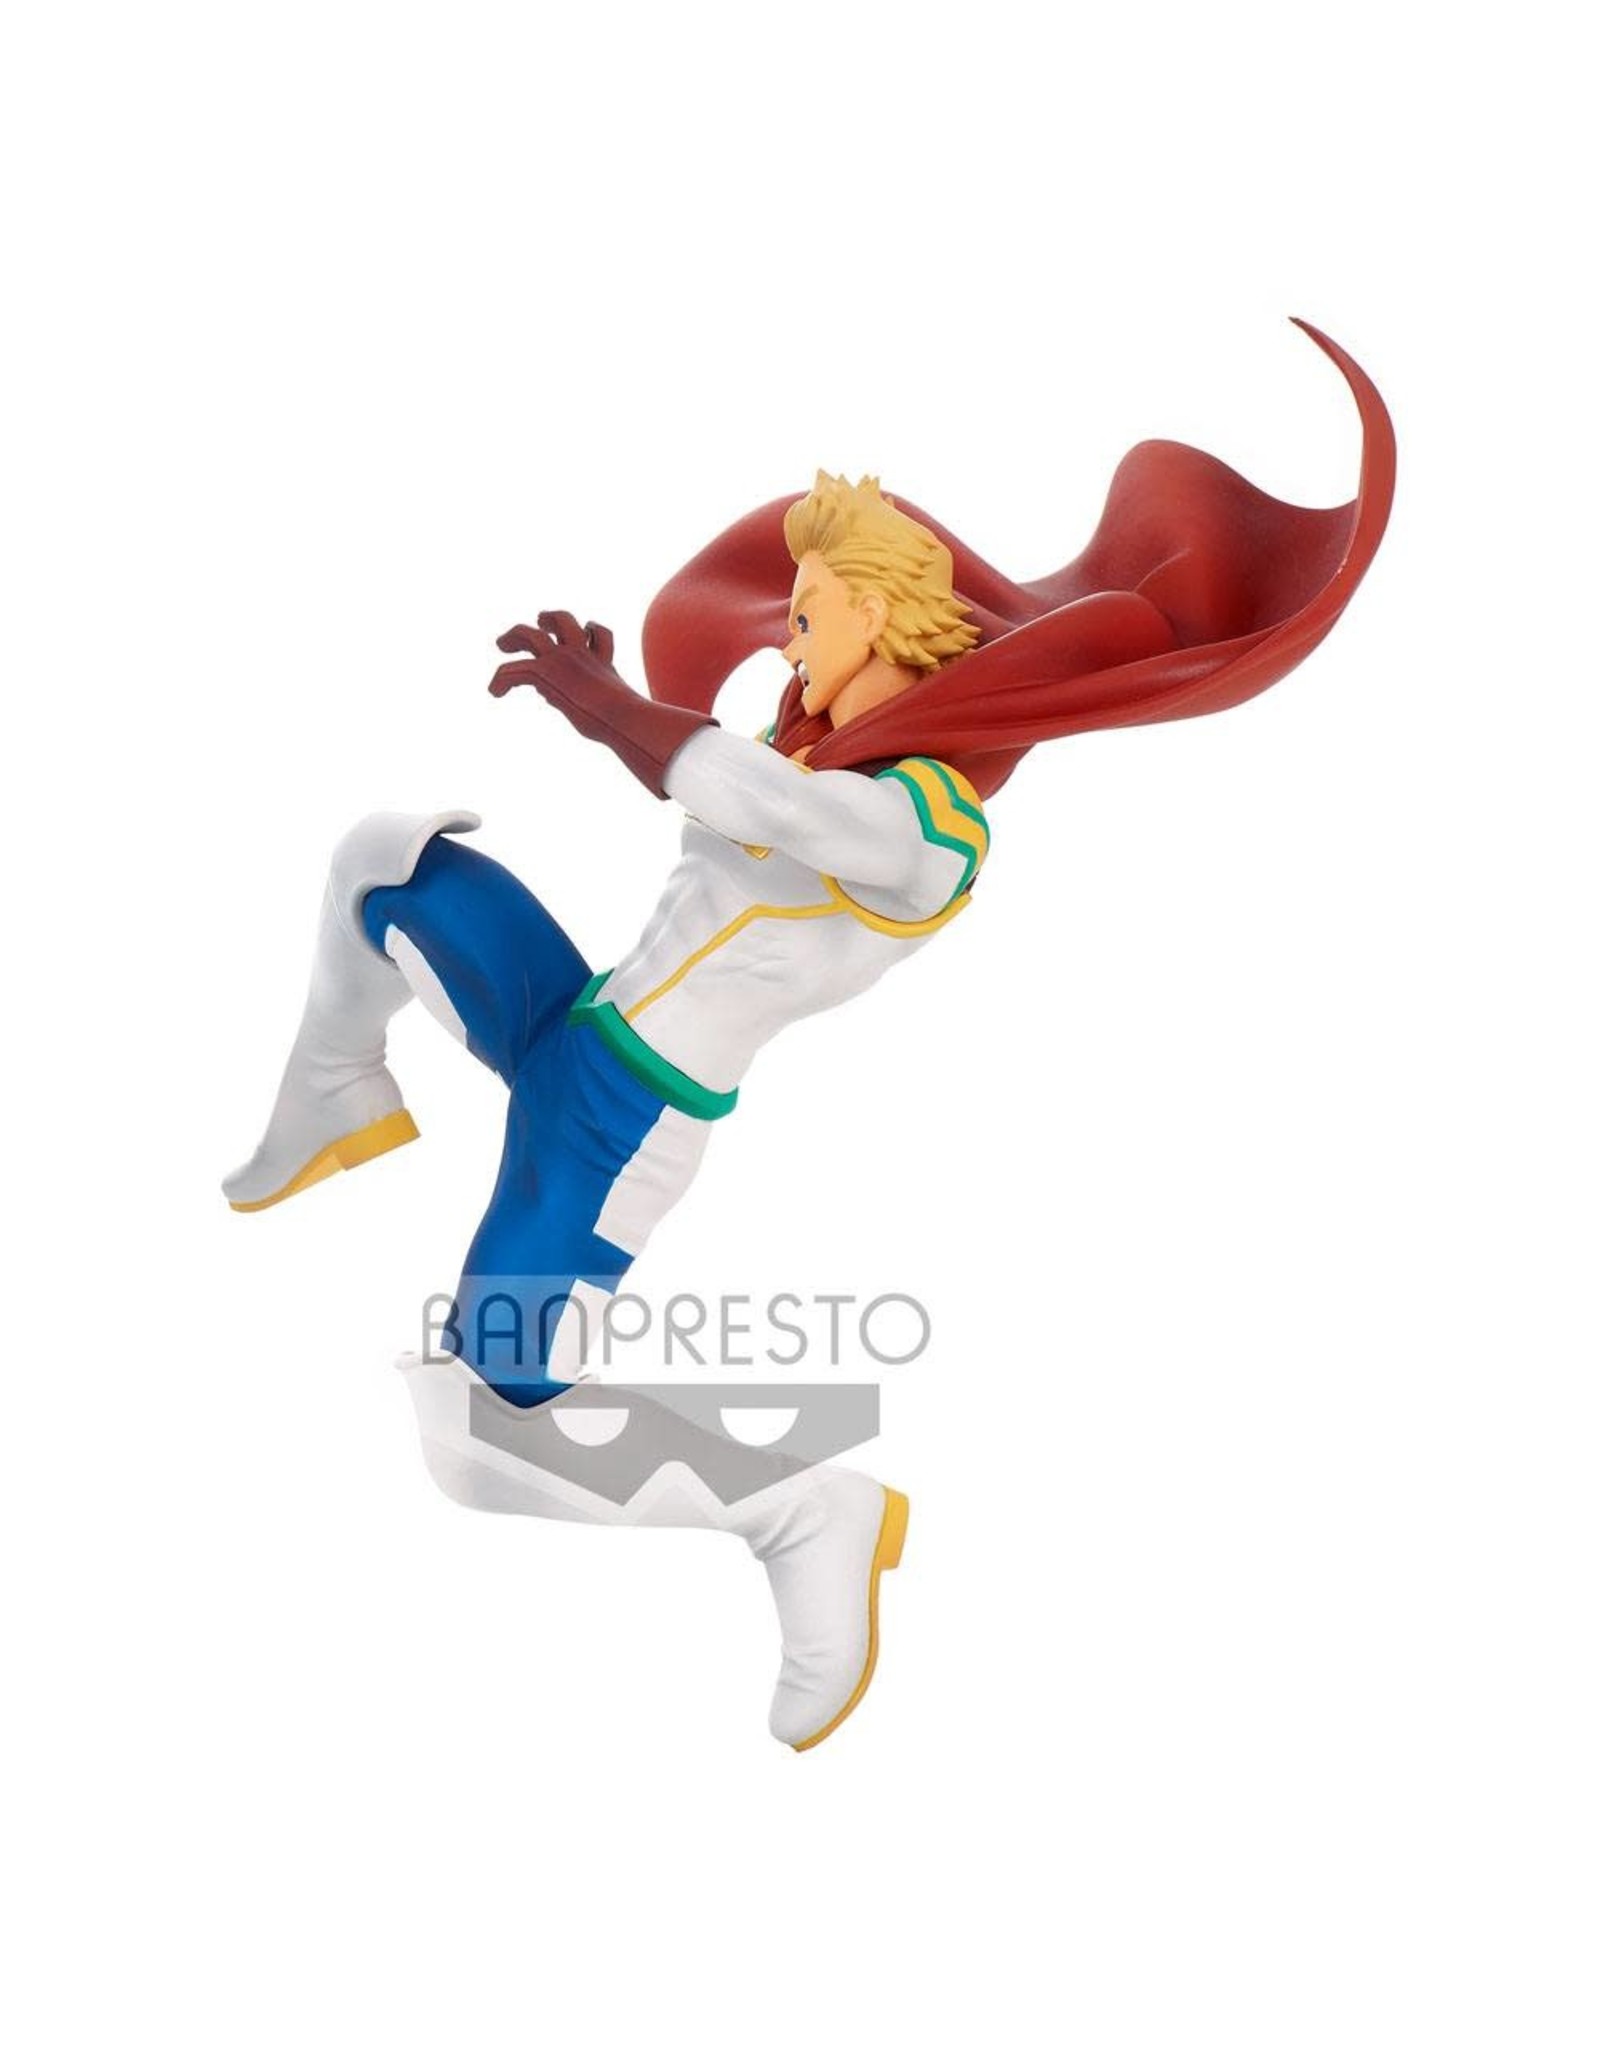 My Hero Academia - Lemillion The Amazing Heroes PVC Statue - 13 cm